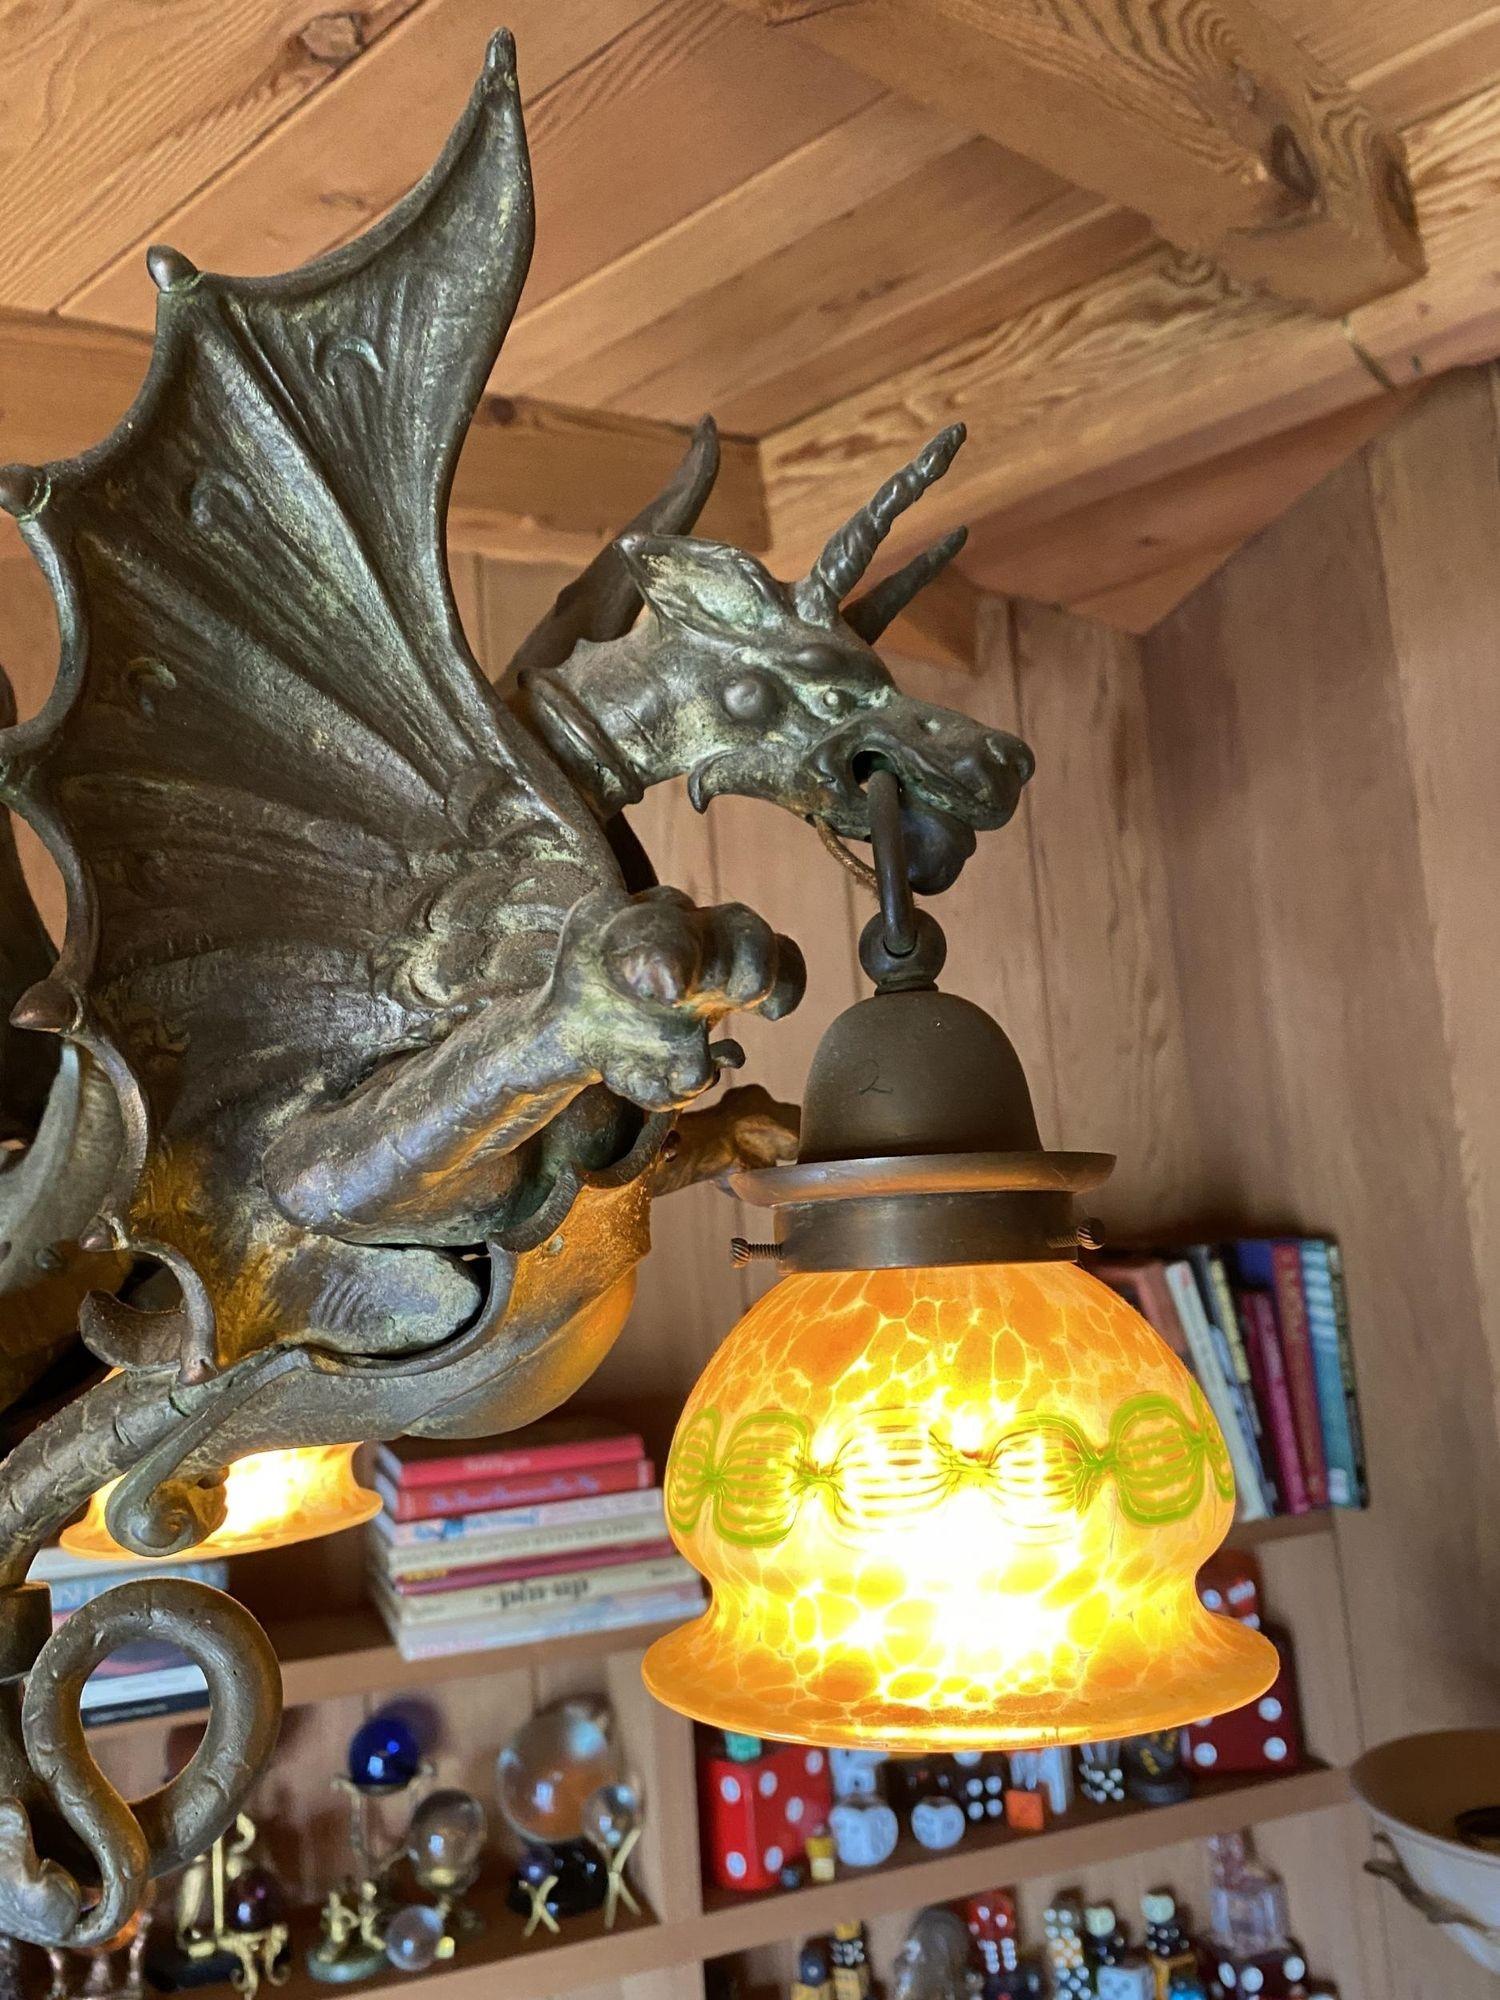 Ce lustre personnalisé est composé de dragons coulés en bronze à la cire perdue et d'abat-jour en albâtre espagnol. Il comprend également une boule en bronze massif avec un baldaquin en forme de crochet et une chaîne en bronze massif.

Les